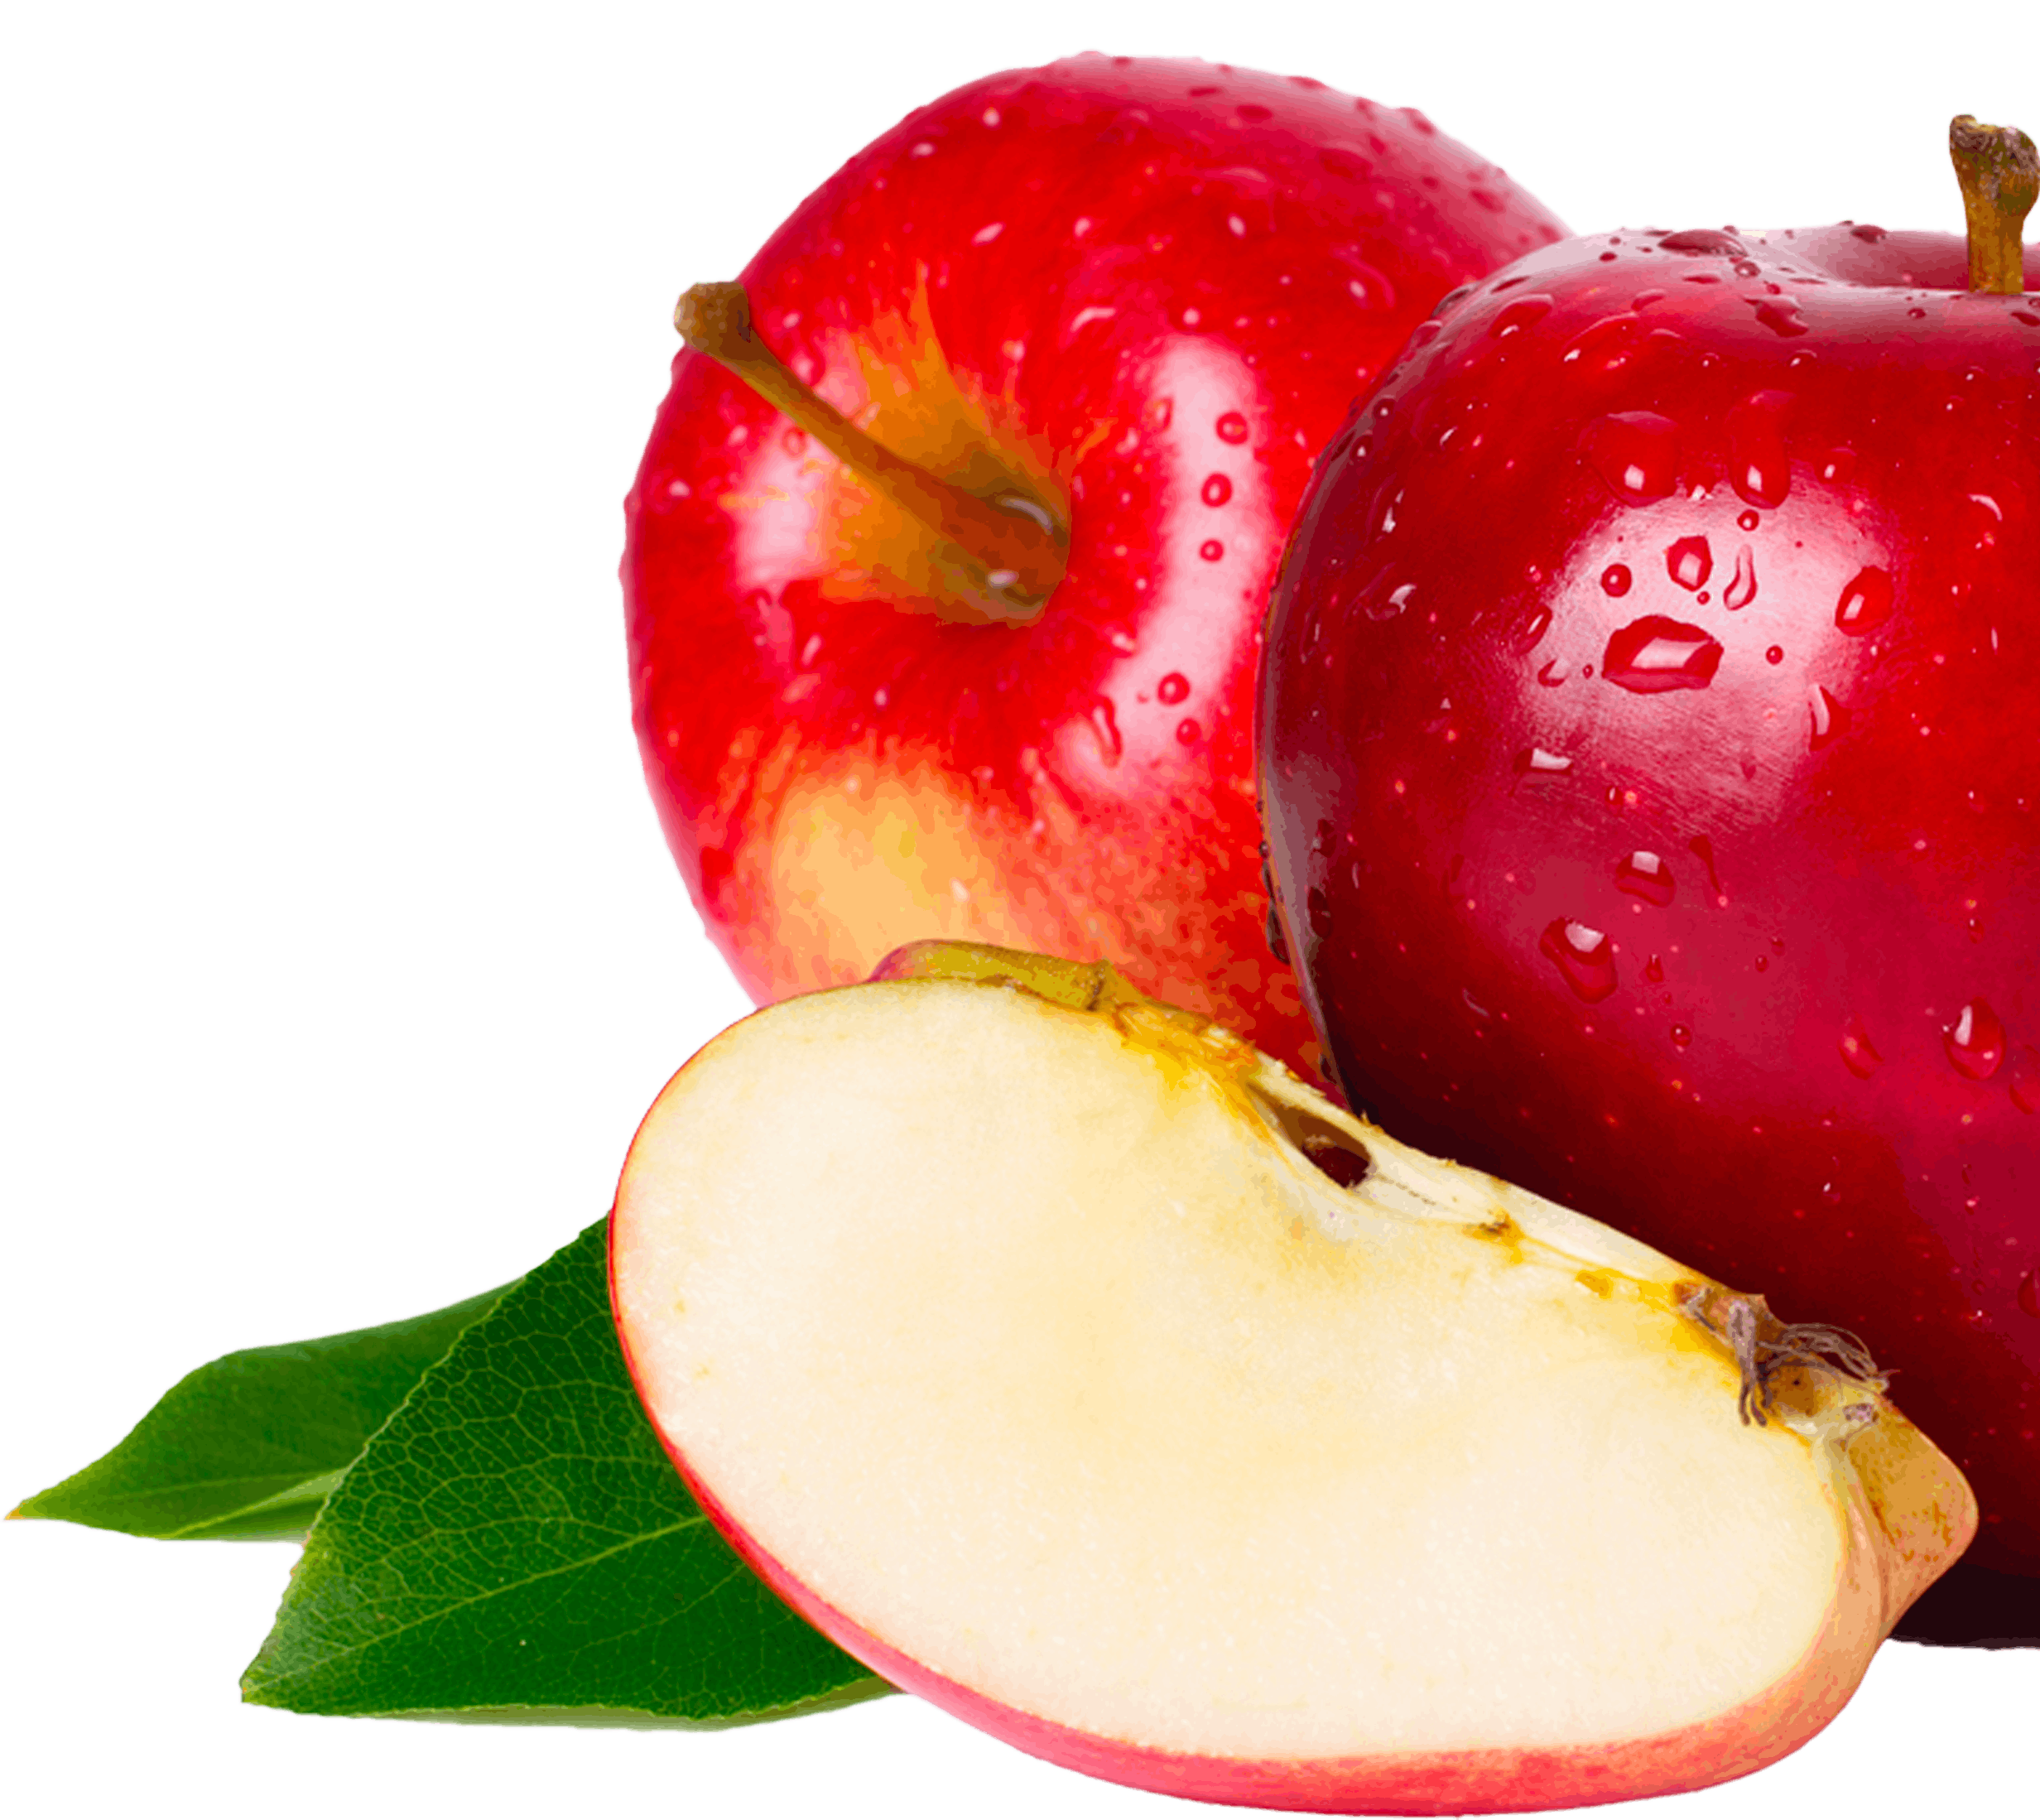 cran apple juice recipe